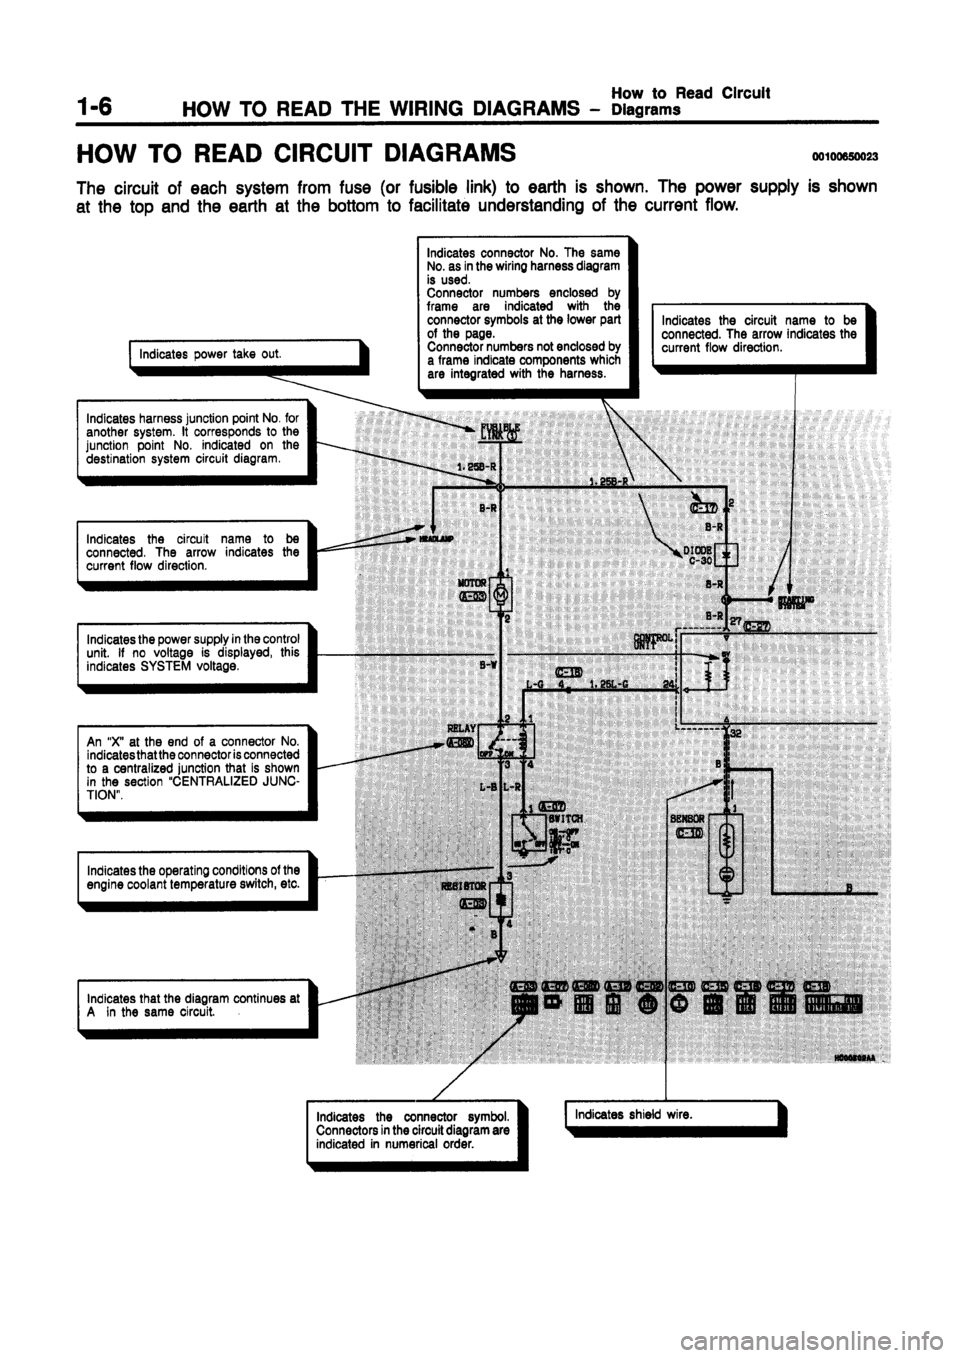 MITSUBISHI GALANT 1997 8.G Electrical Wiring Diagram Workshop Manual 